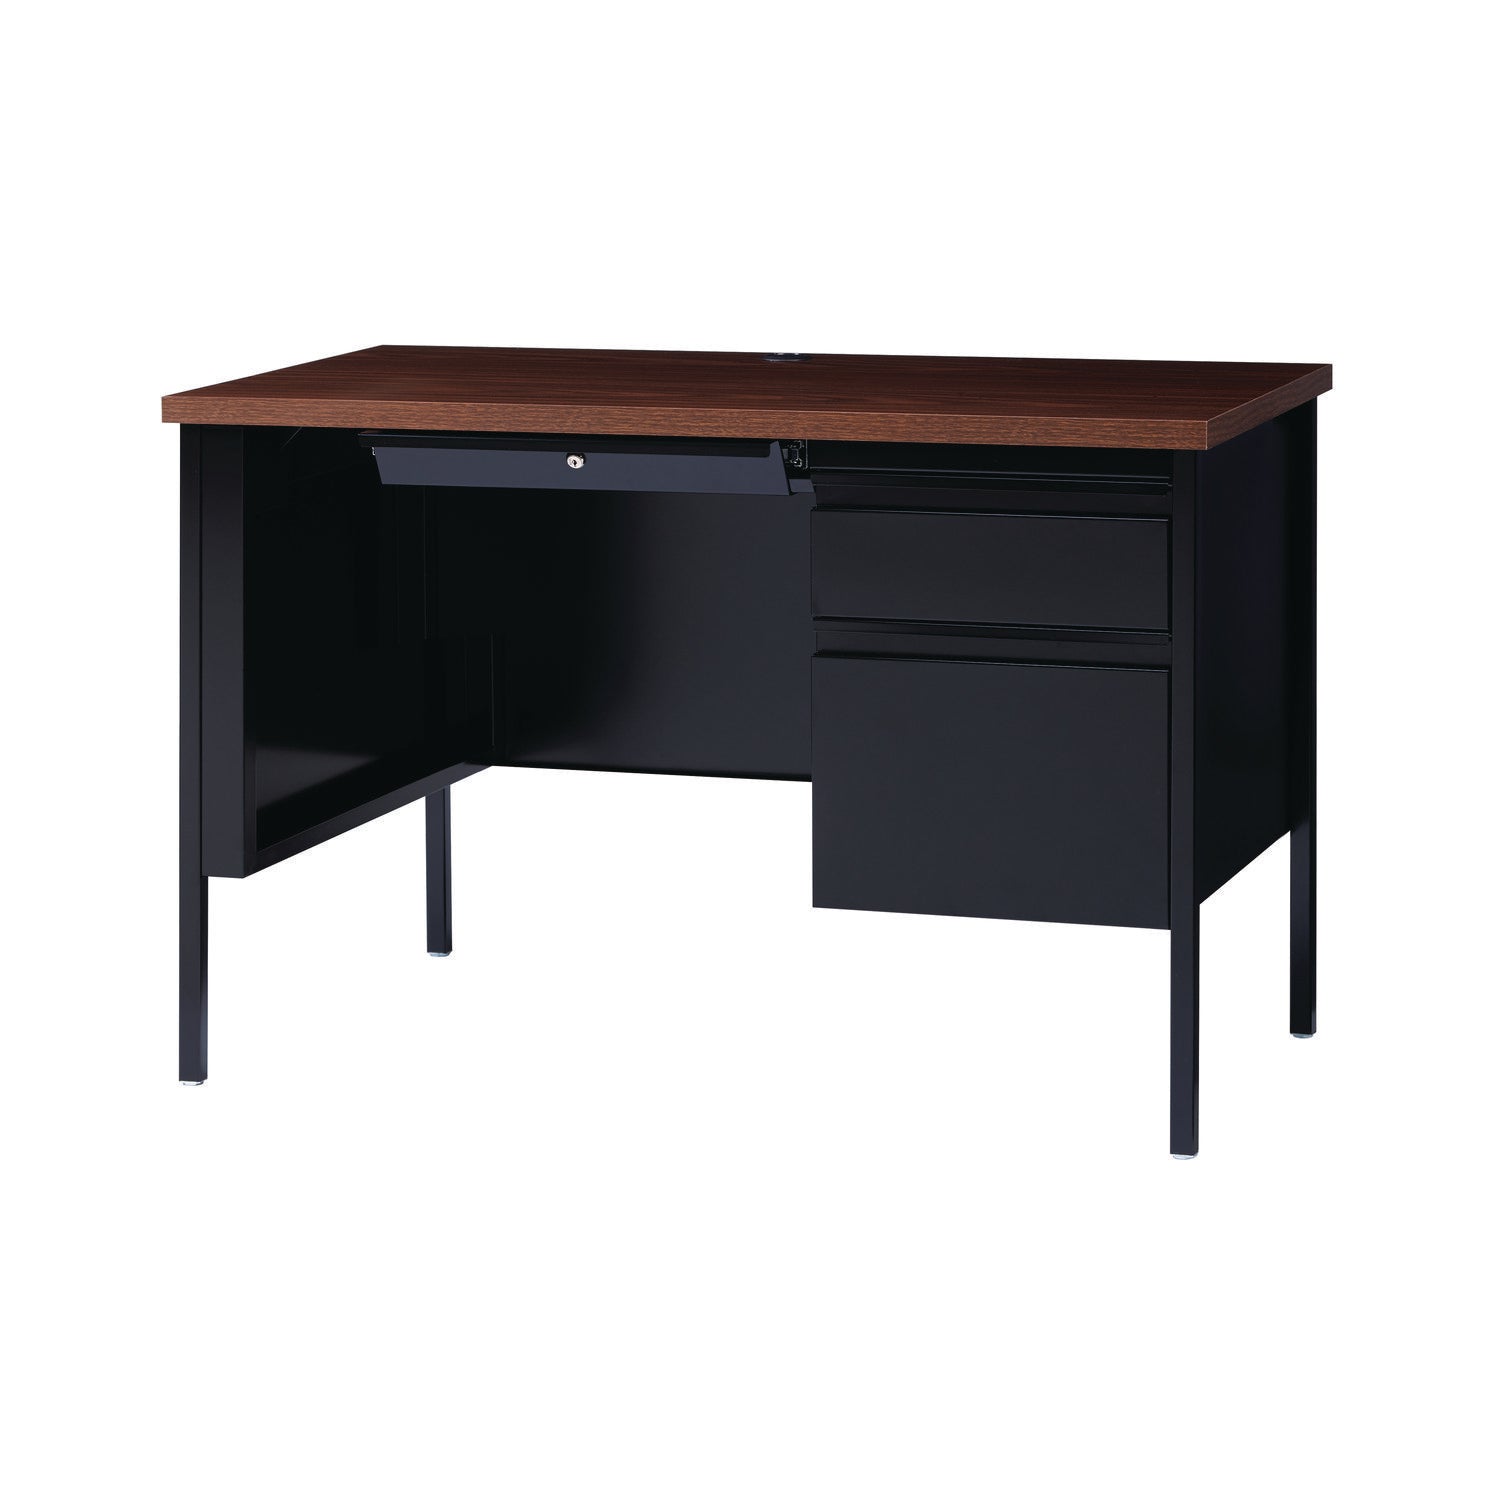 double-pedestal-steel-desk-60-x-30-x-295-mocha-black-black-legs_alehsd6030bm - 7